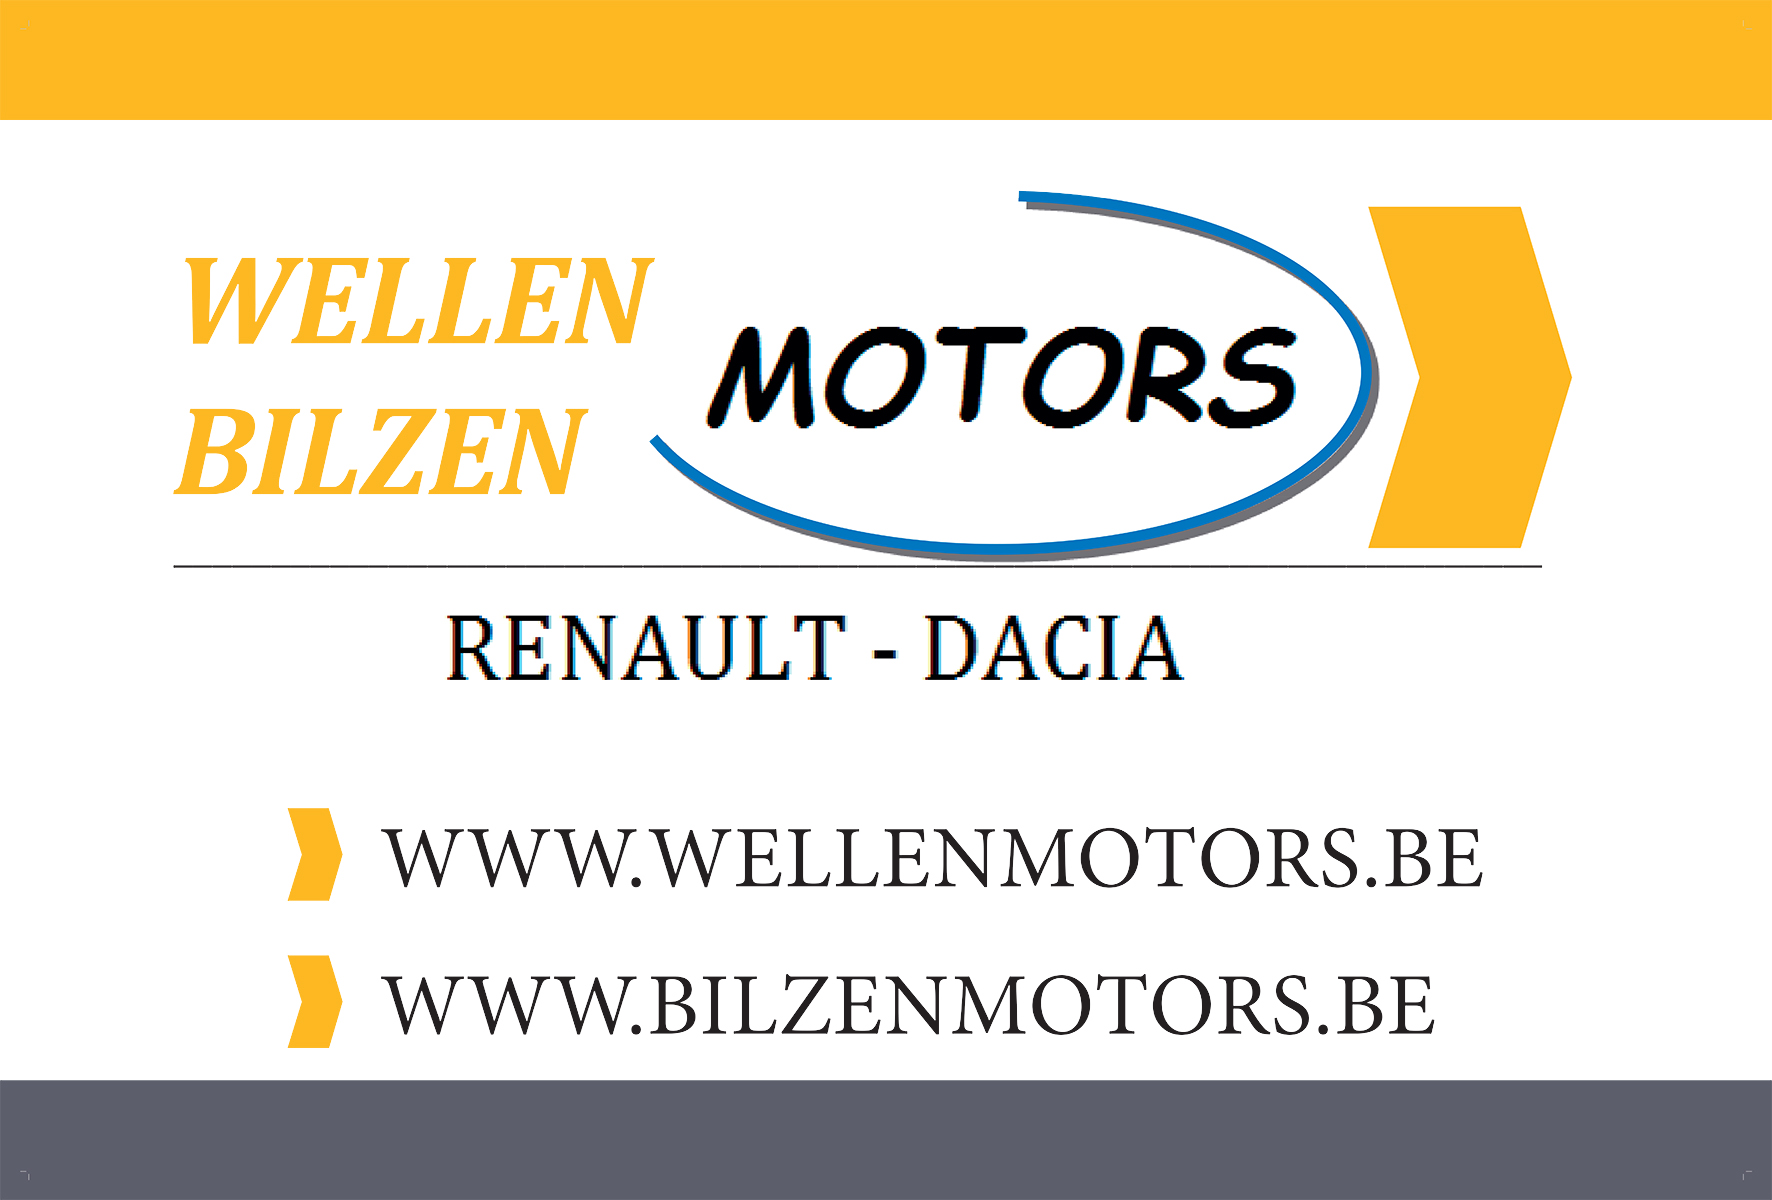 Wellen Motors